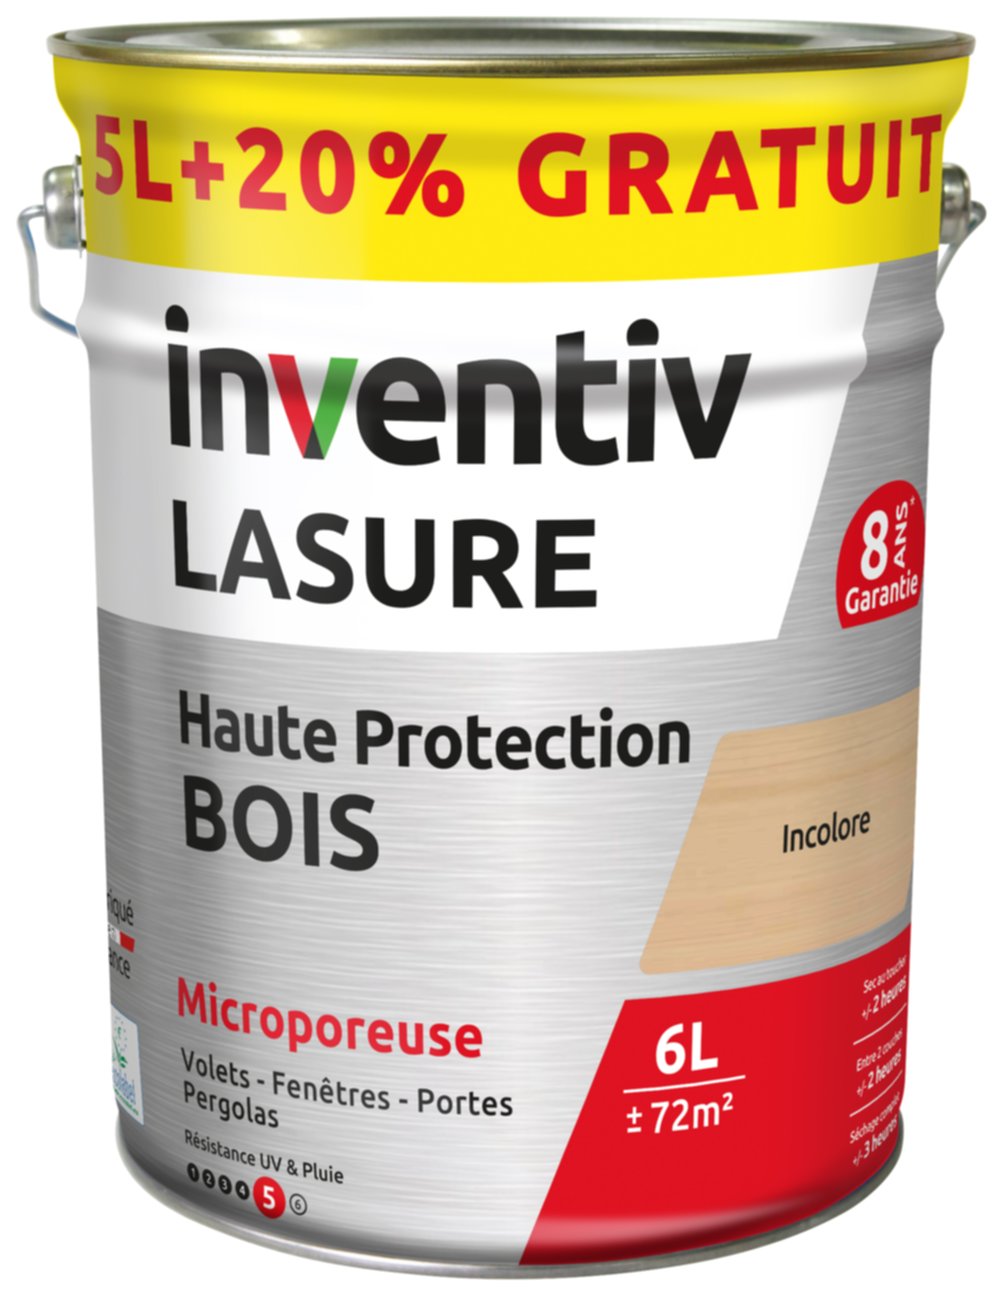 Lasure Haute Protection bois 8 ans incolore 5L+20% - INVENTIV